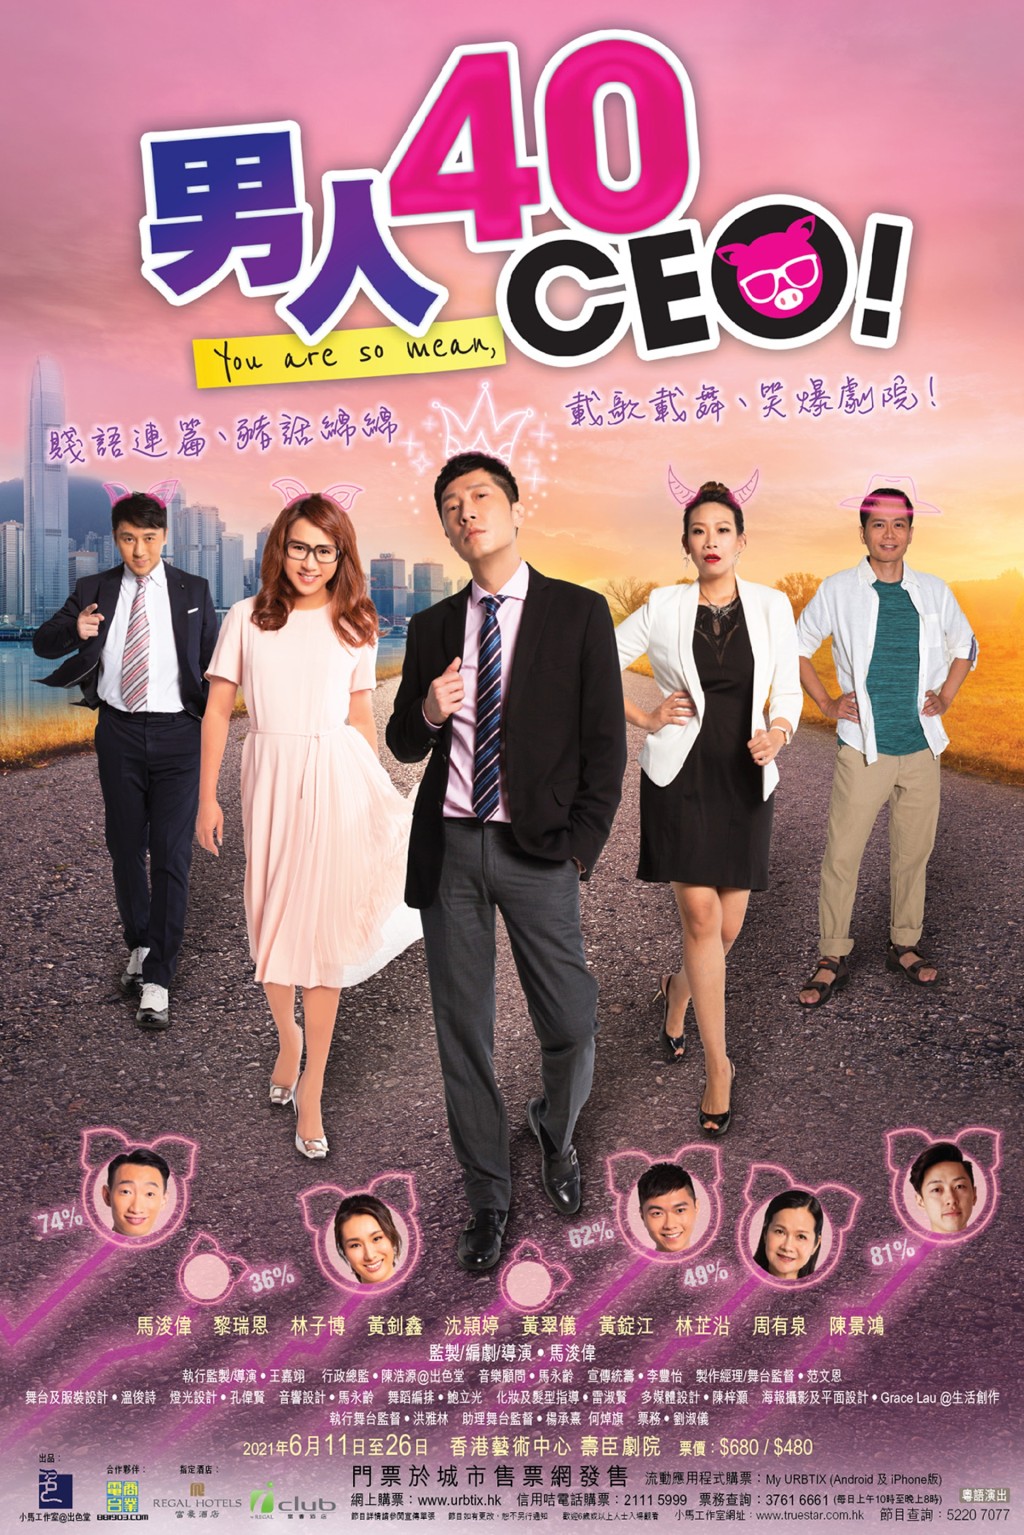 沈颖婷参演舞台剧《男人40 CEO》，当时曾表示未有打算全职重返幕前。